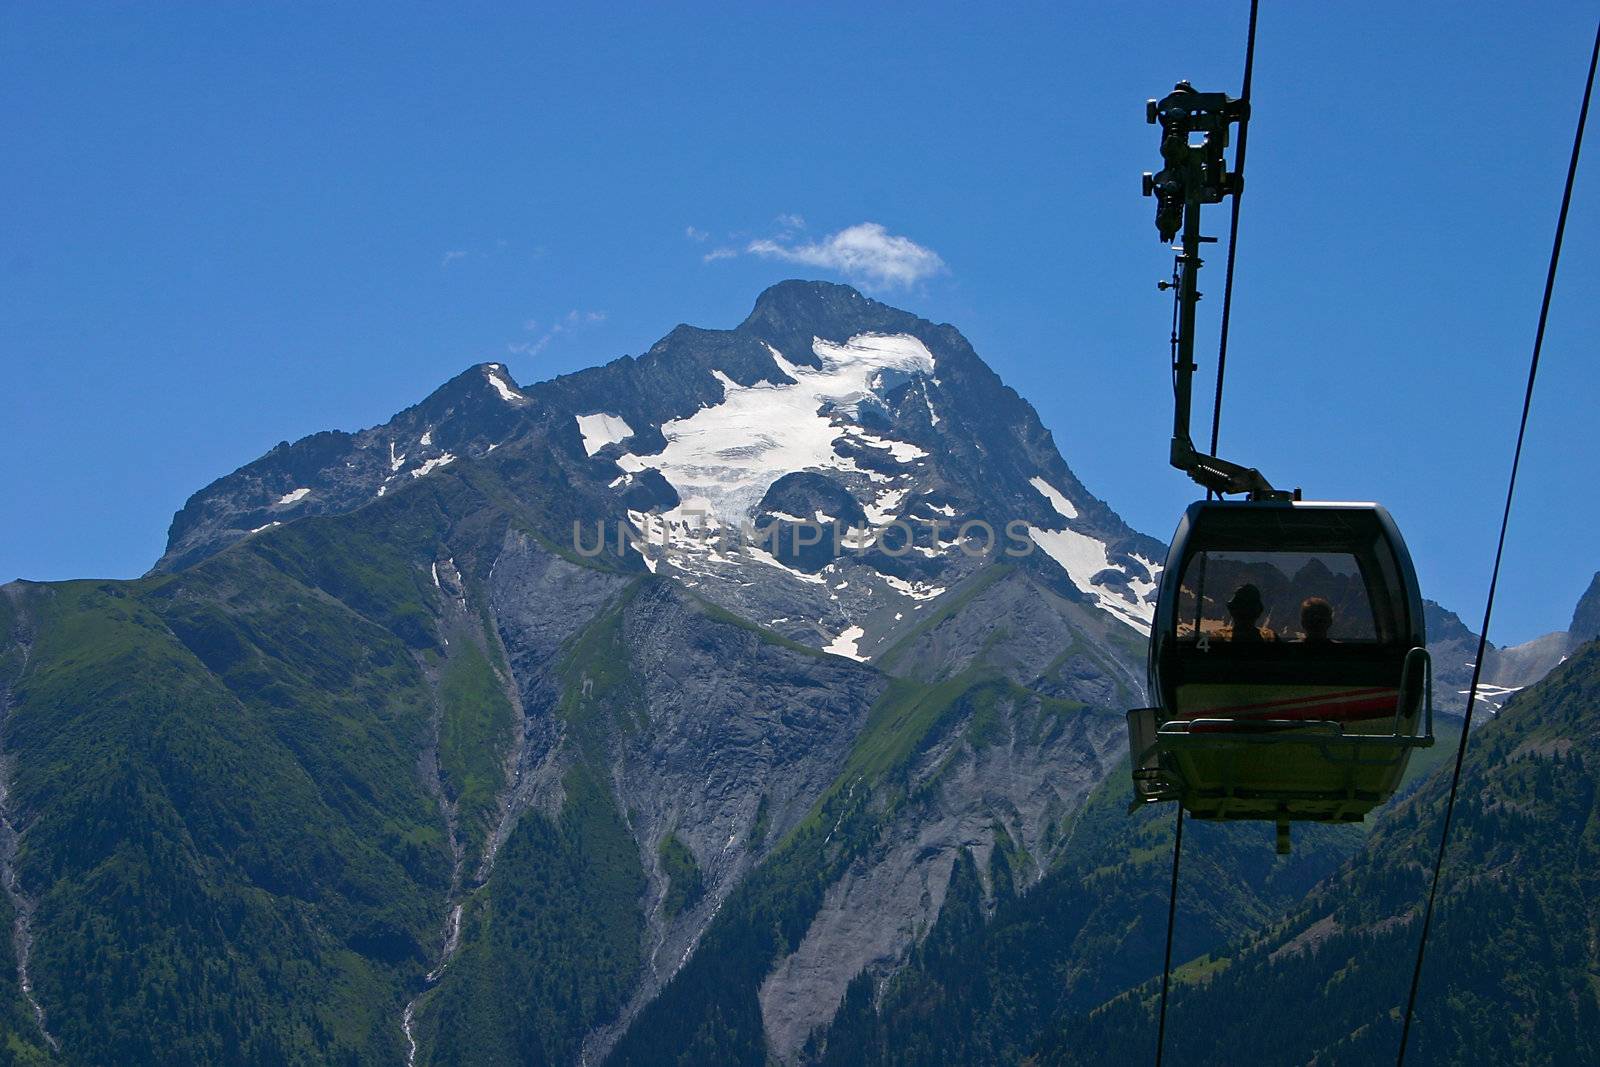 Ski gondola in front of a mountain